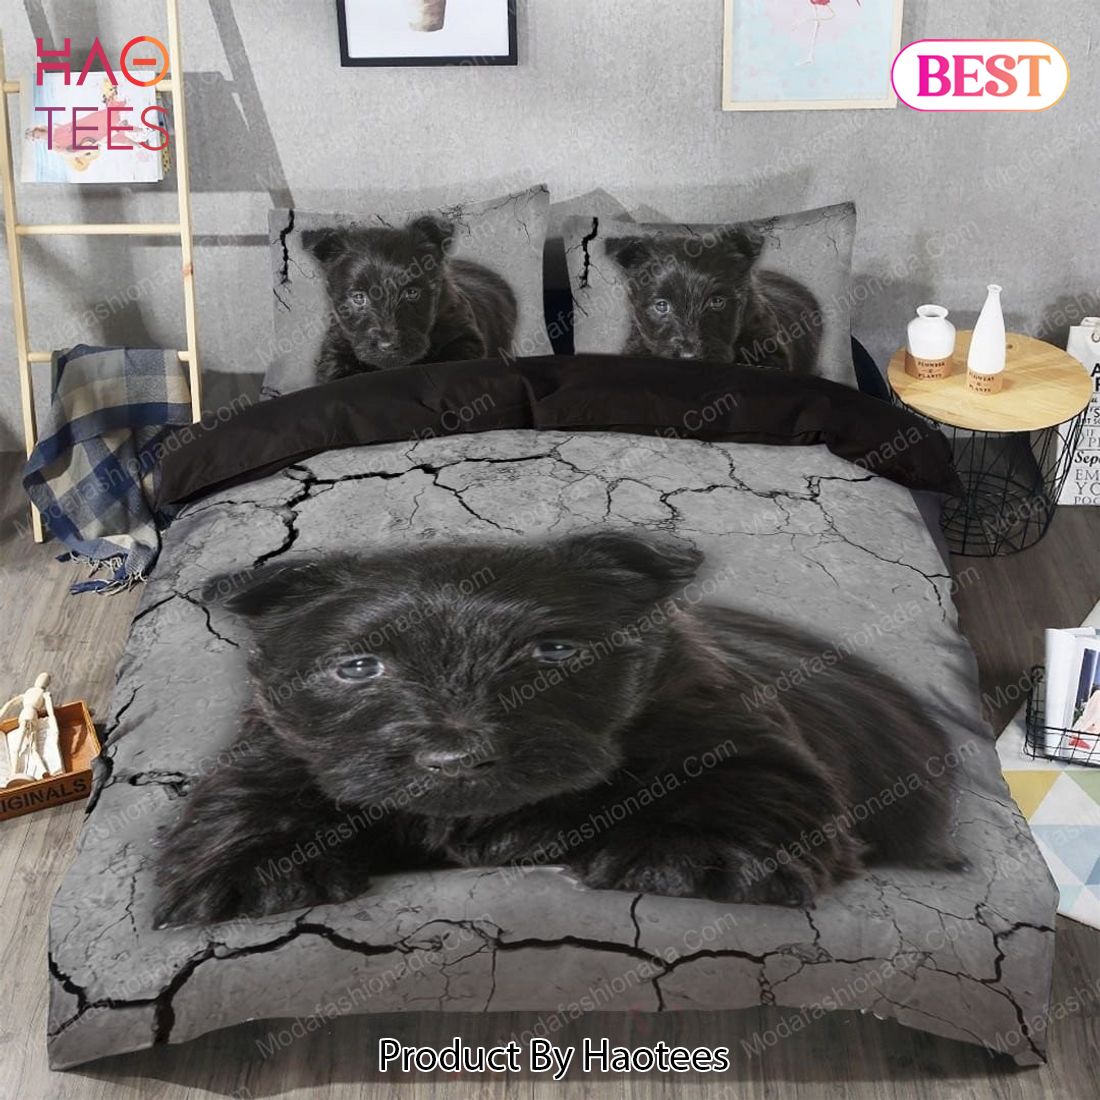 Buy Scottish Terrier Dog Animal 64 Bedding Set Bed Sets, Bedroom Sets, Comforter Sets, Duvet Cover, Bedspread